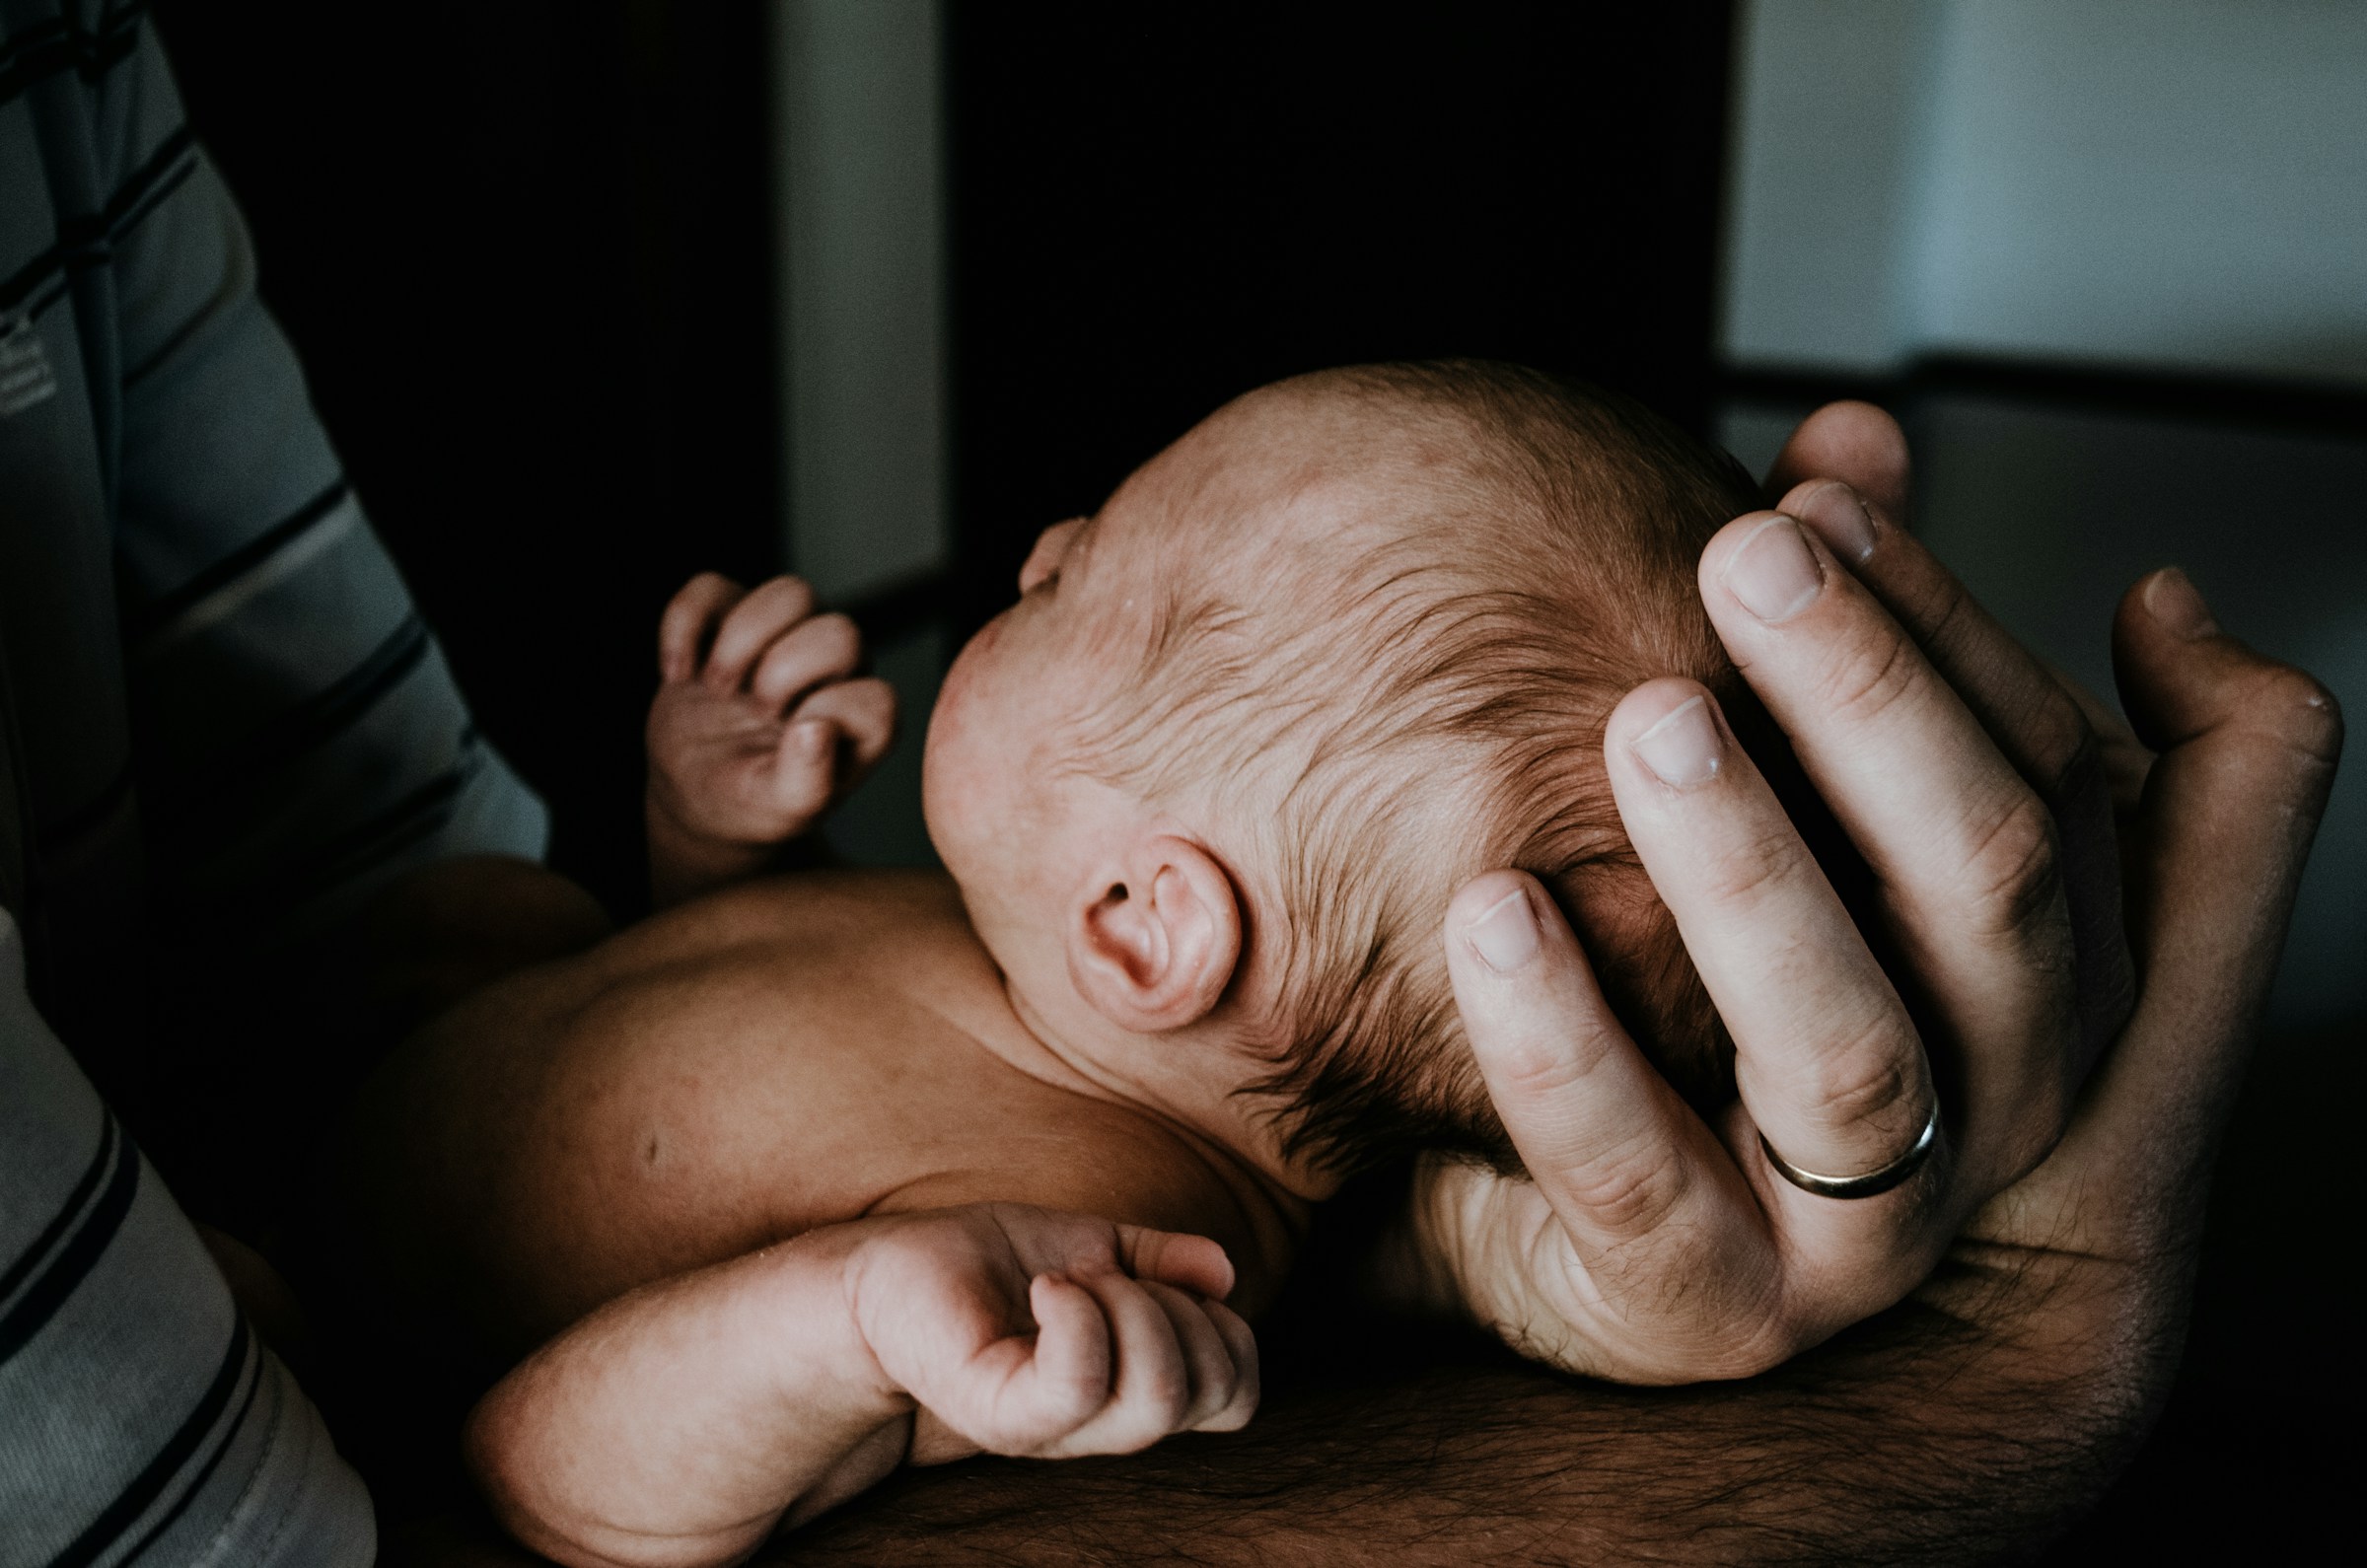 Un hombre con un bebé recién nacido en brazos | Fuente: Unsplash